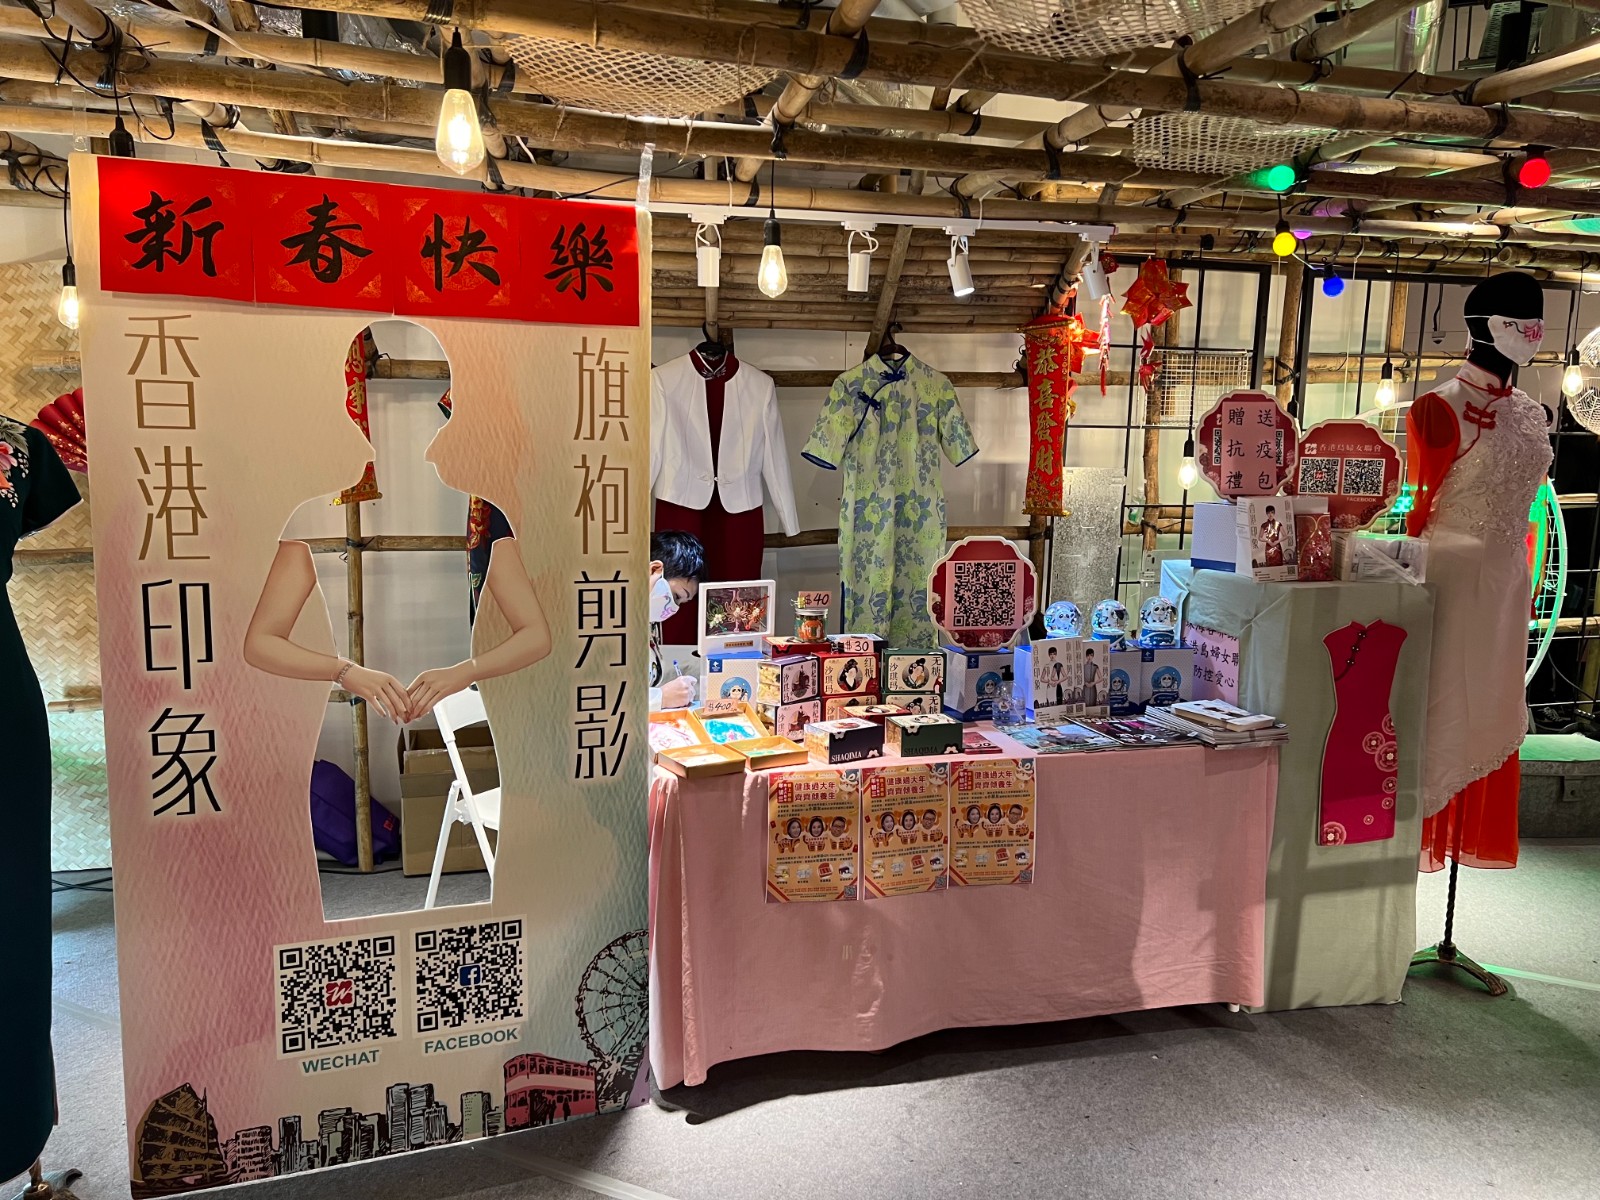 香港島婦女聯會一連三日在社區派發快速測試套裝及抗疫福袋-9